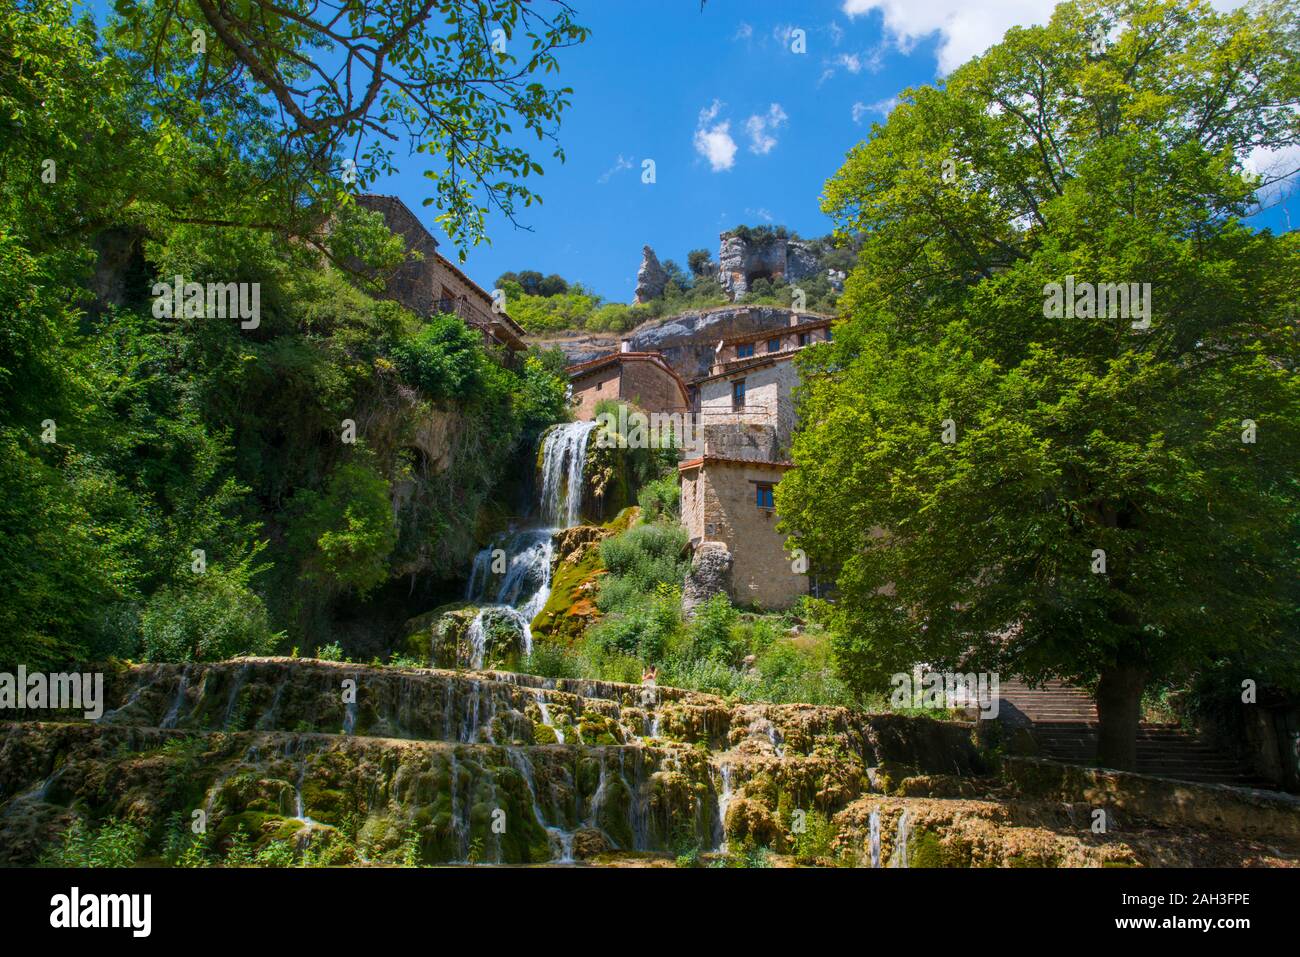 Cascades and village. Orbaneja del Castillo, Burgos province, Castilla Leon, Spain. Stock Photo